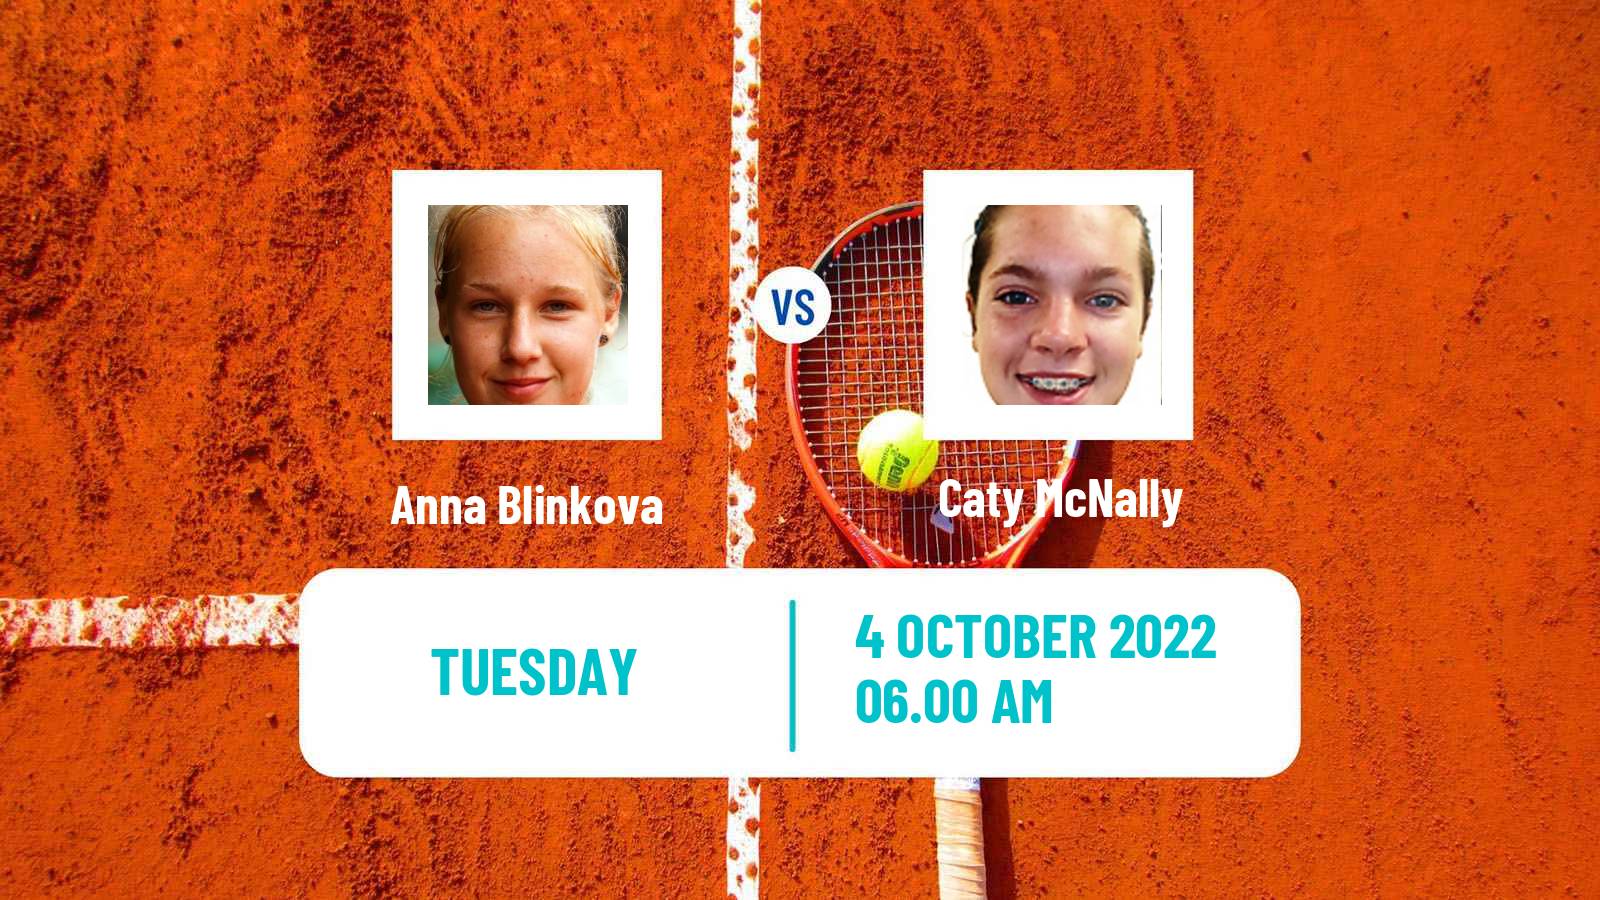 Tennis WTA Ostrava Anna Blinkova - Caty McNally